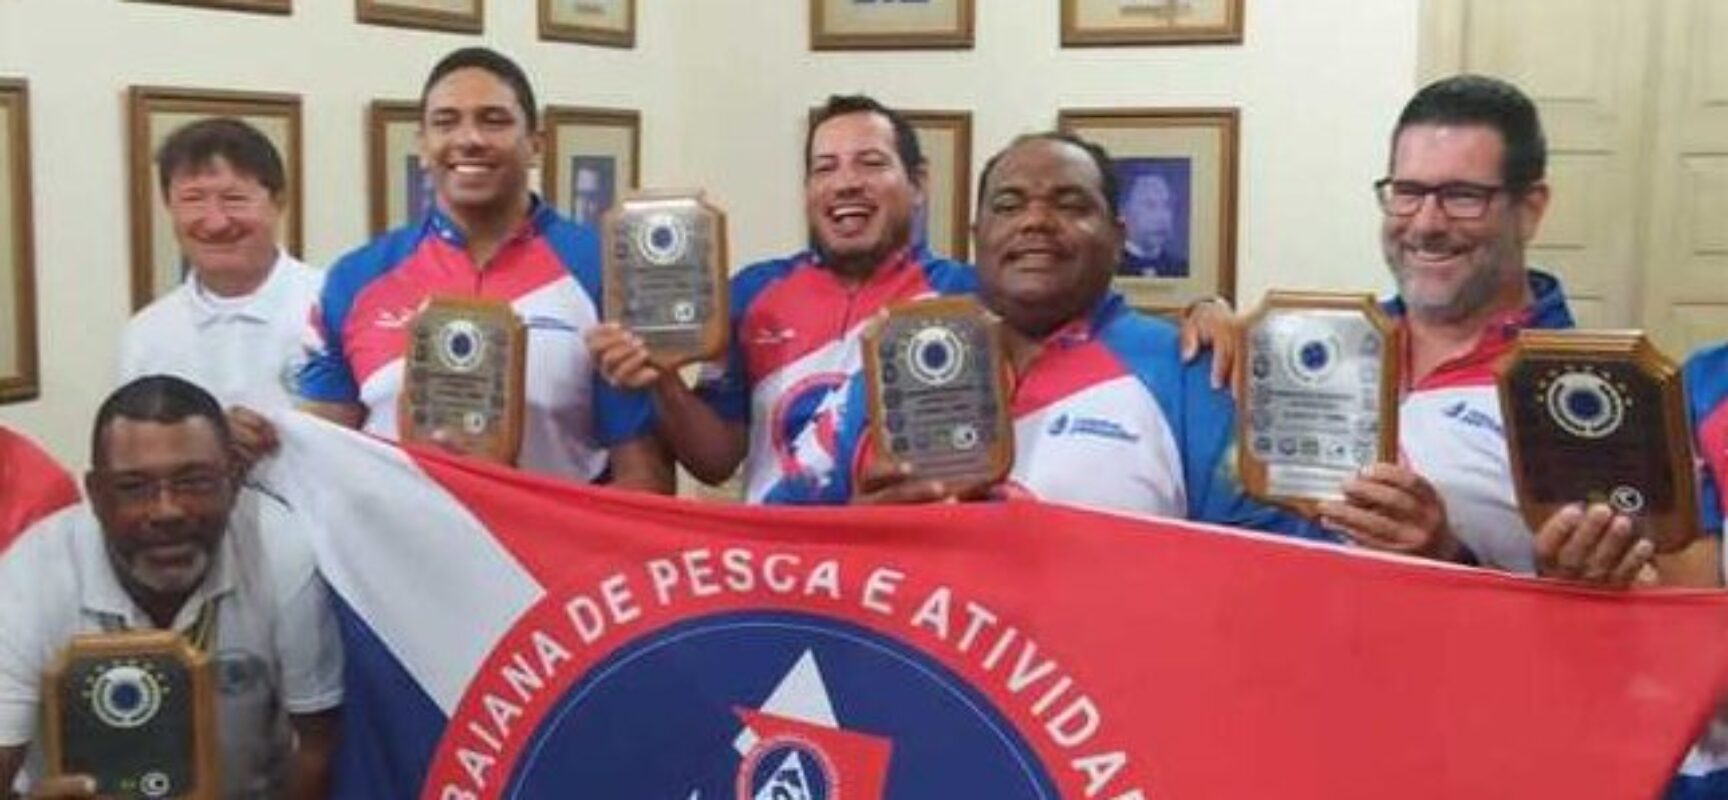 Ilhéus sedia Campeonato Brasileiro de Pesca em Terra Firme